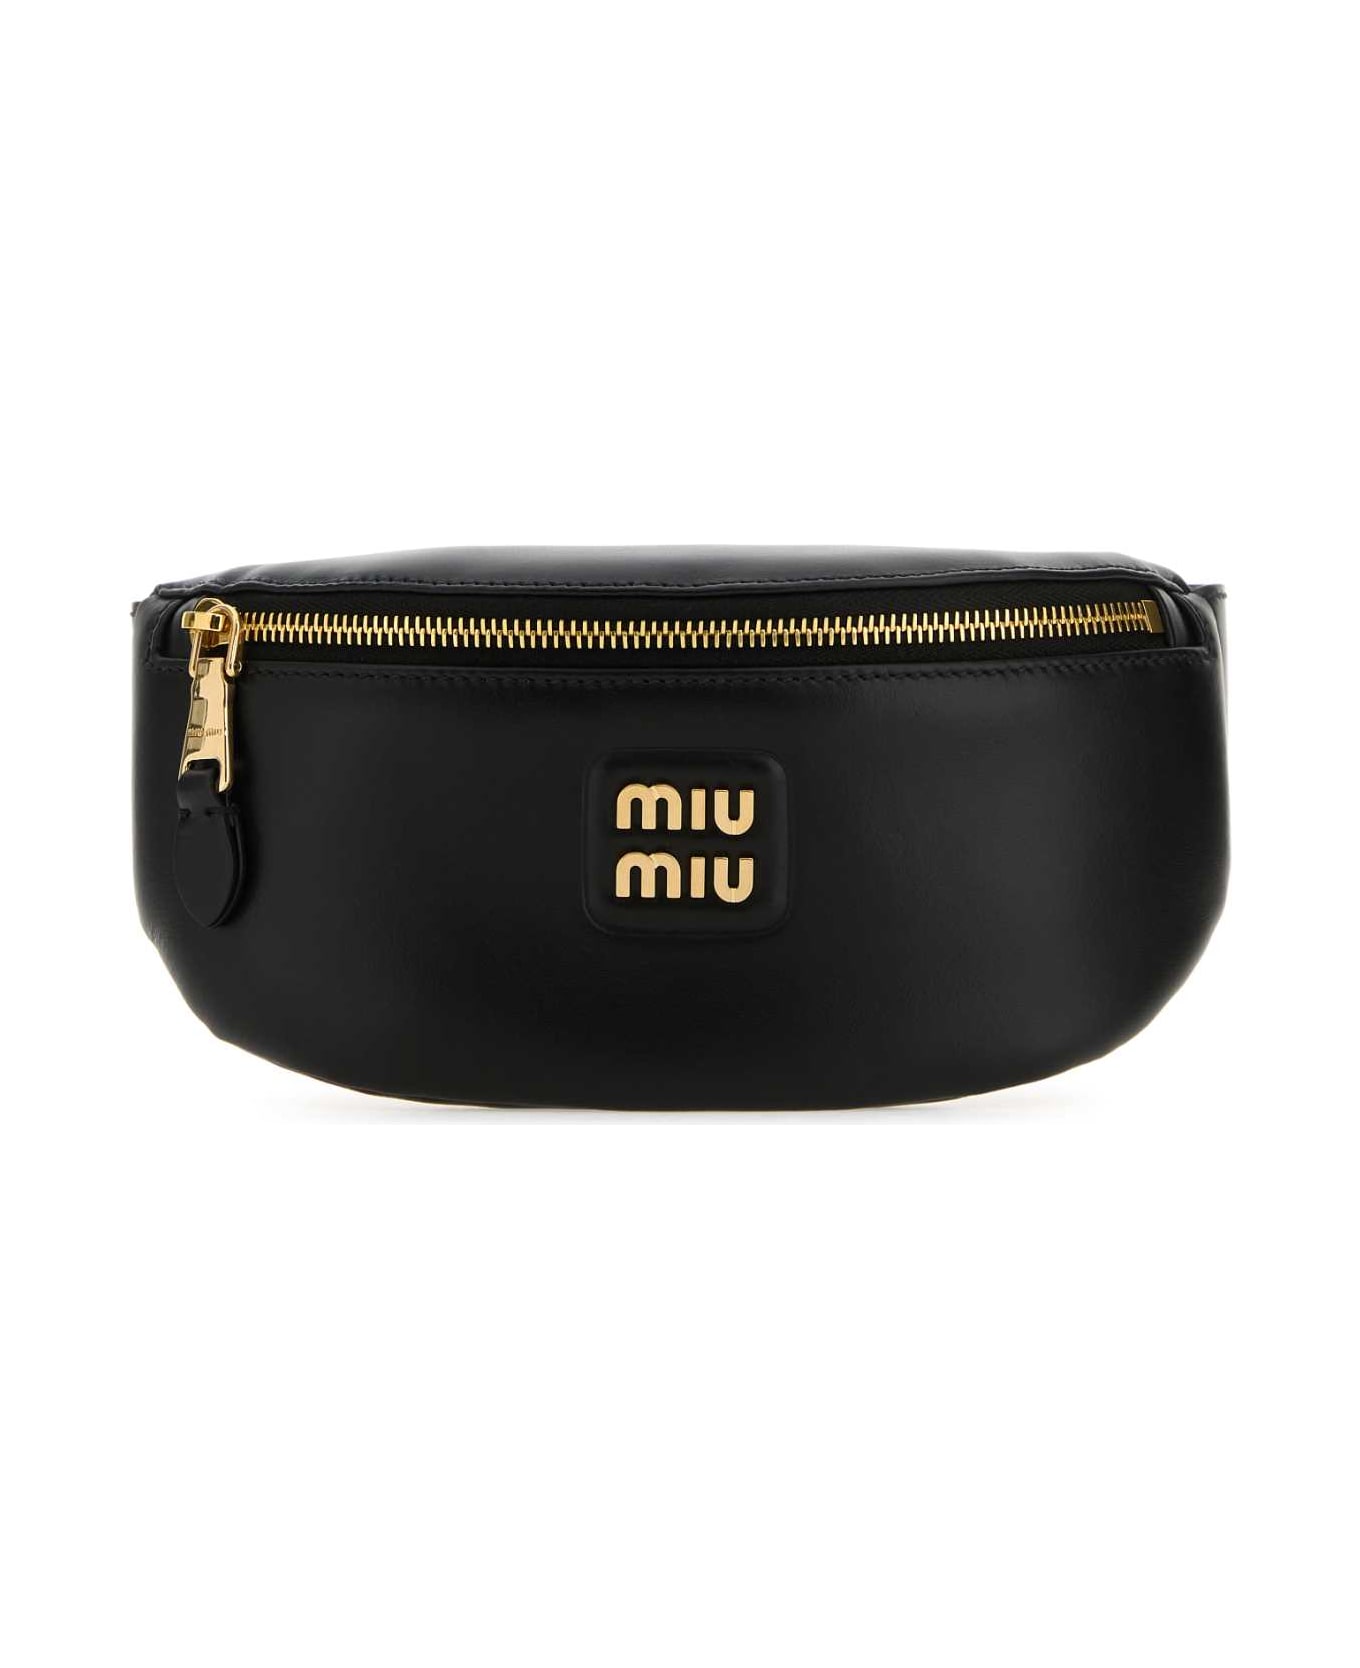 Miu Miu Black Leather Belt Bag - NERO